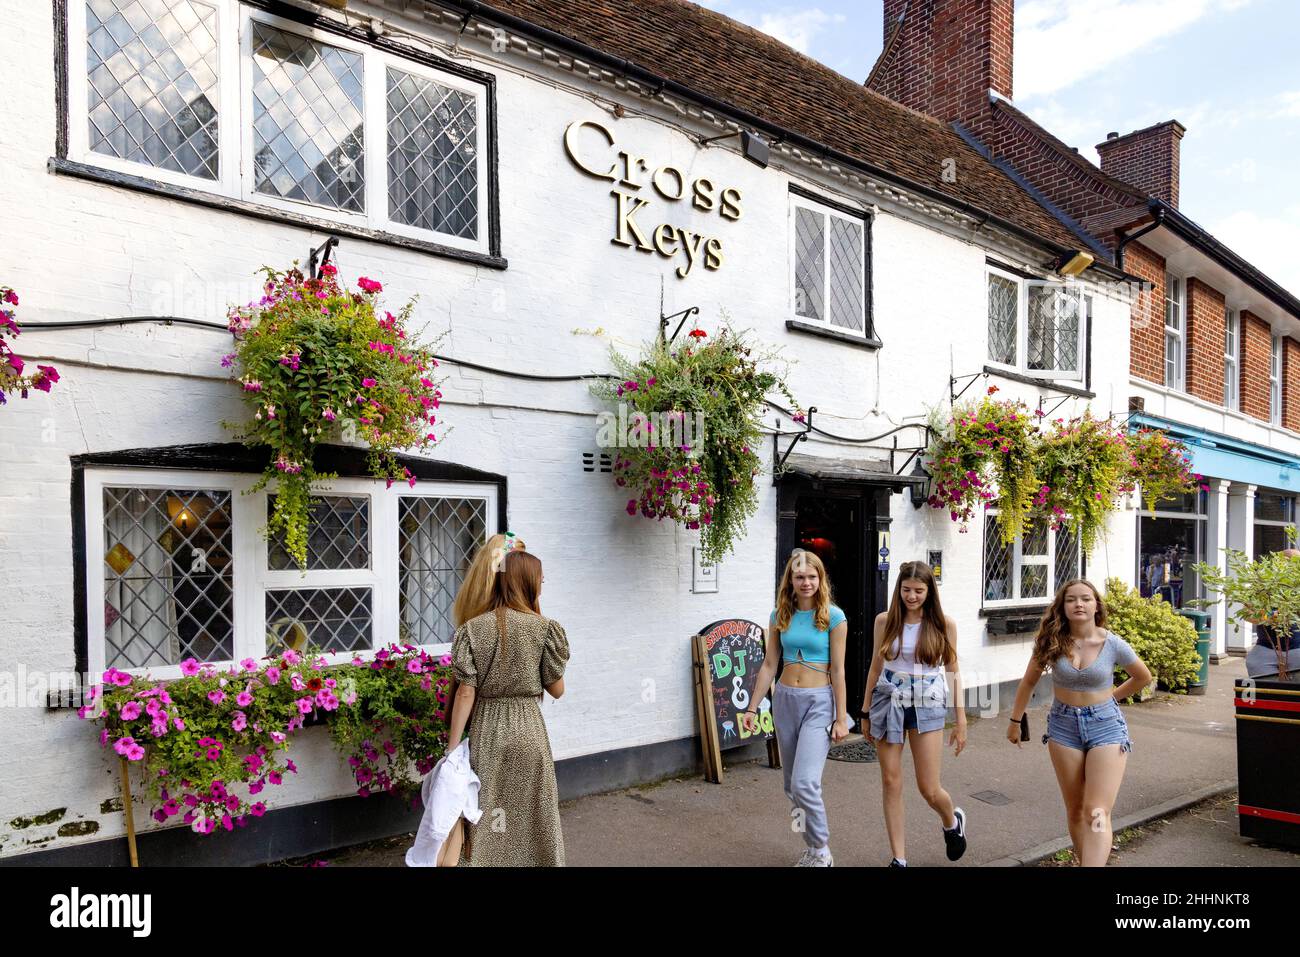 Pub Hertfordshire ; adolescentes devant le pub Cross Keys lors d'une journée ensoleillée en été, Harpenden, Hertfordshire, Royaume-Uni Banque D'Images